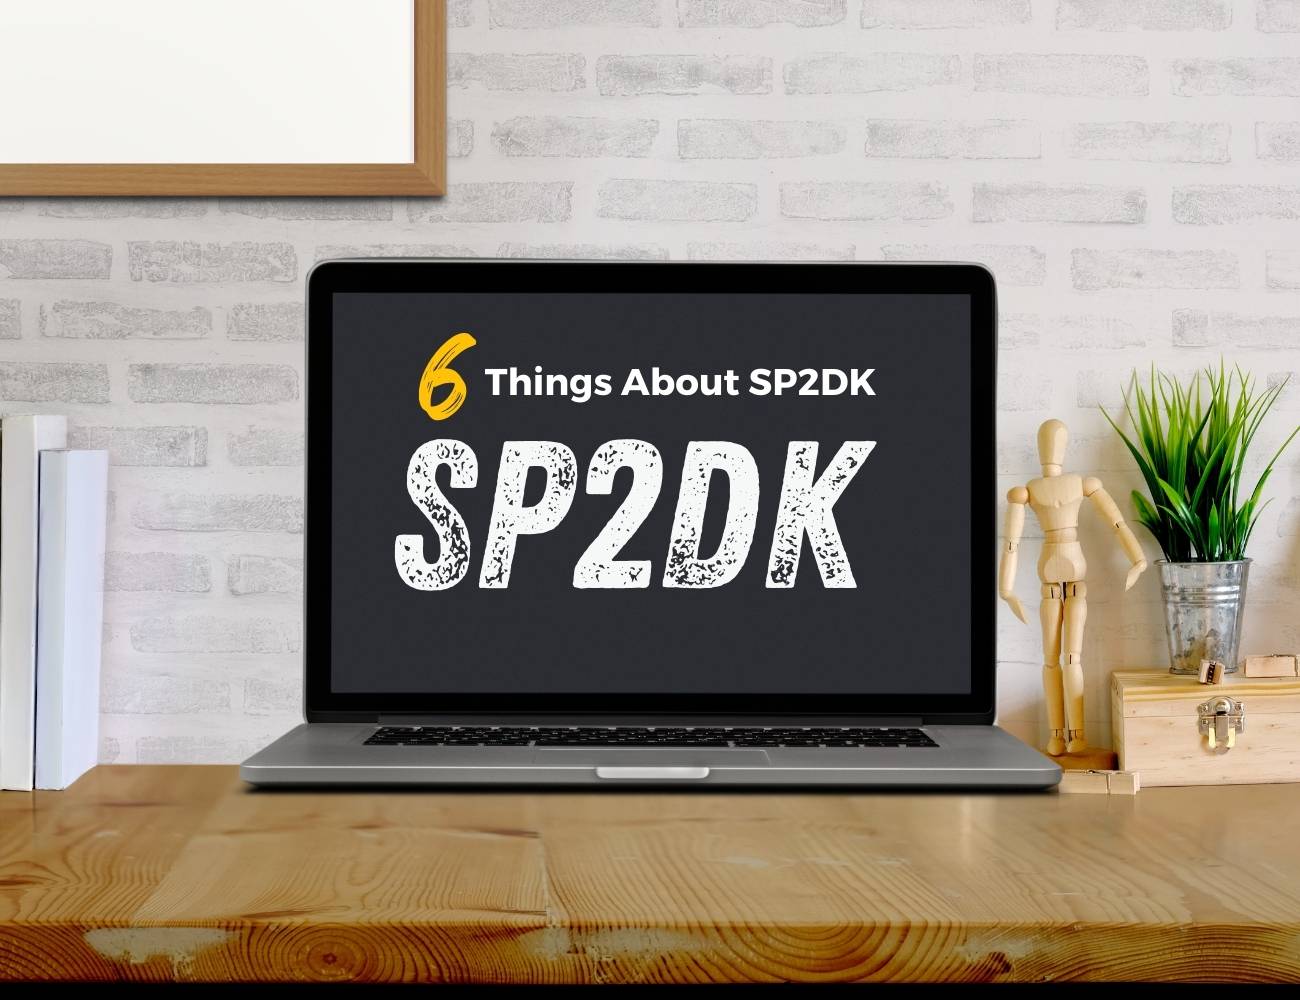                                         Enam Hal Yang Perlu Diketahui Tentang SP2DK
                    